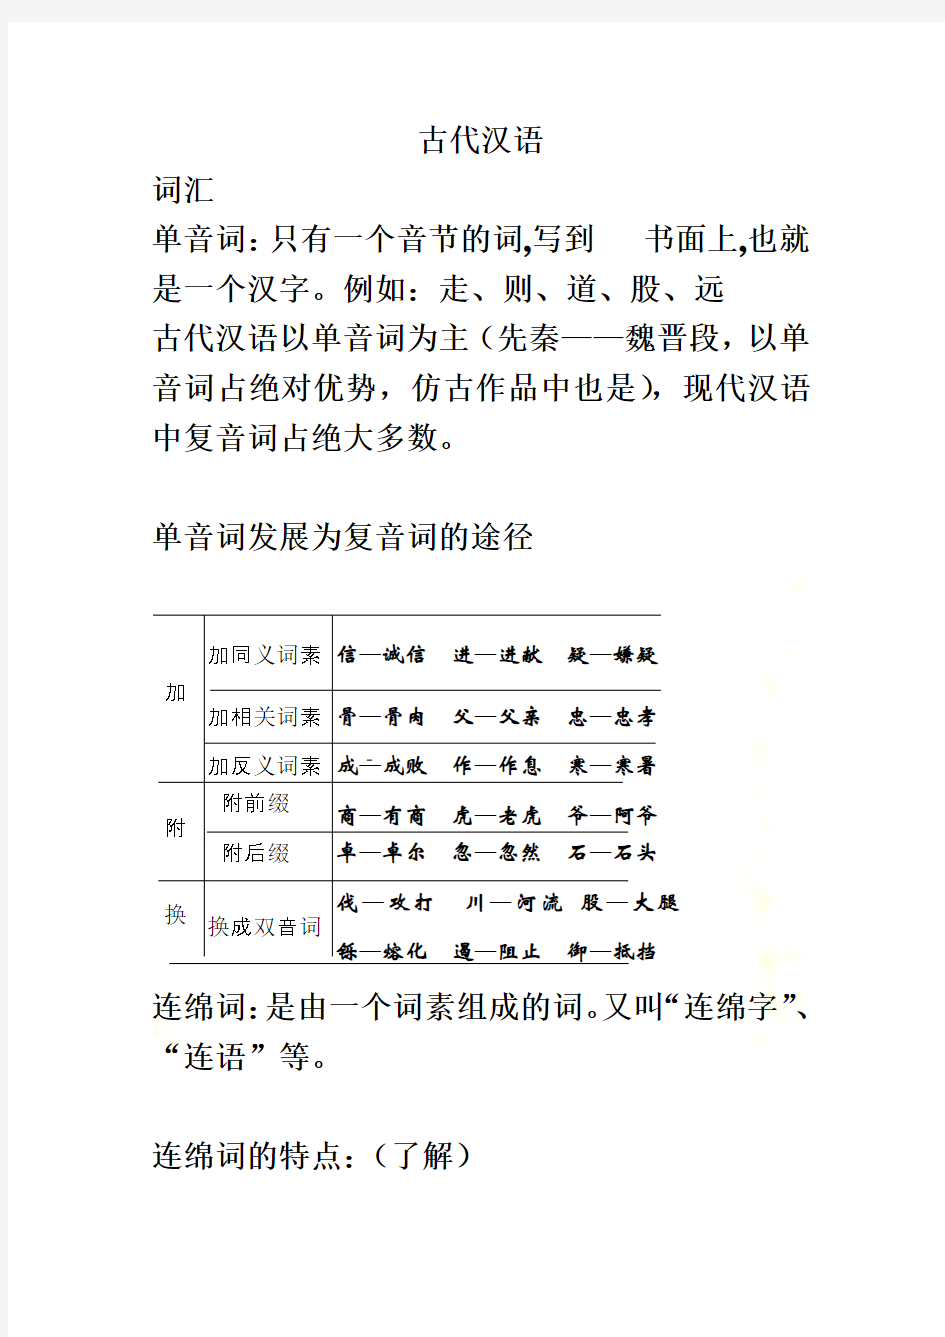 古代汉语考试整理